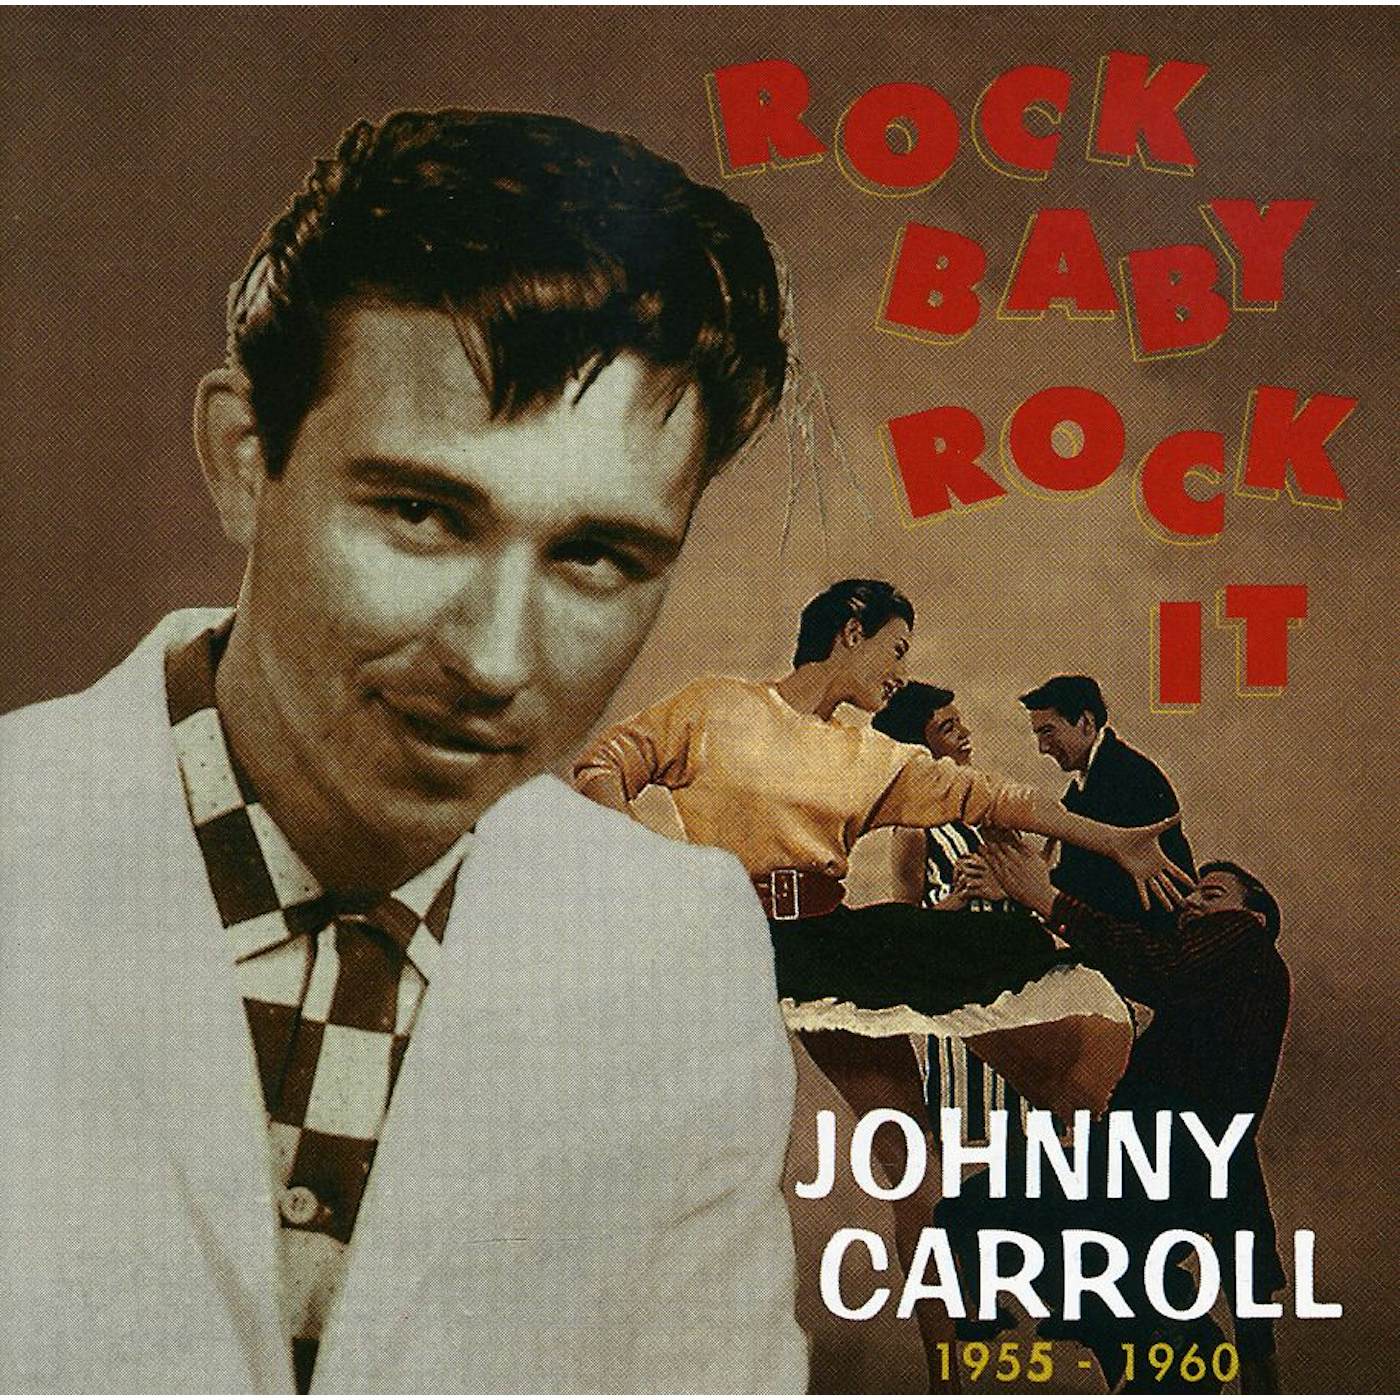 Johnny Carroll ROCK BABY ROCK IT CD